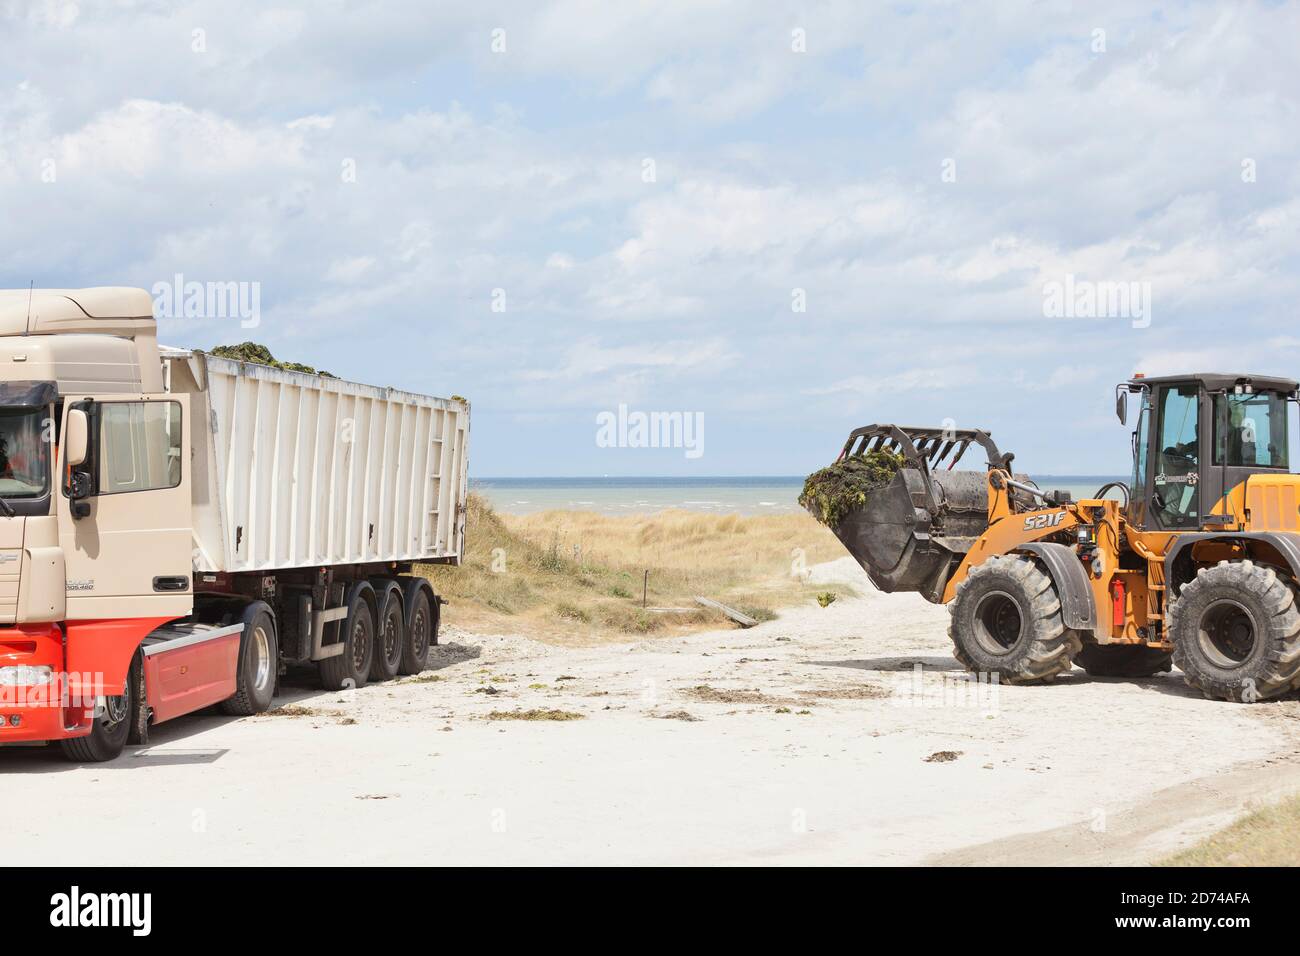 Mit schwerem Gerät werden zur Sommerzeit die Strände in der Bucht von St Brieuc von giftigen Grünalgen gesäubert. Bretagne Frankreich Stock Photo